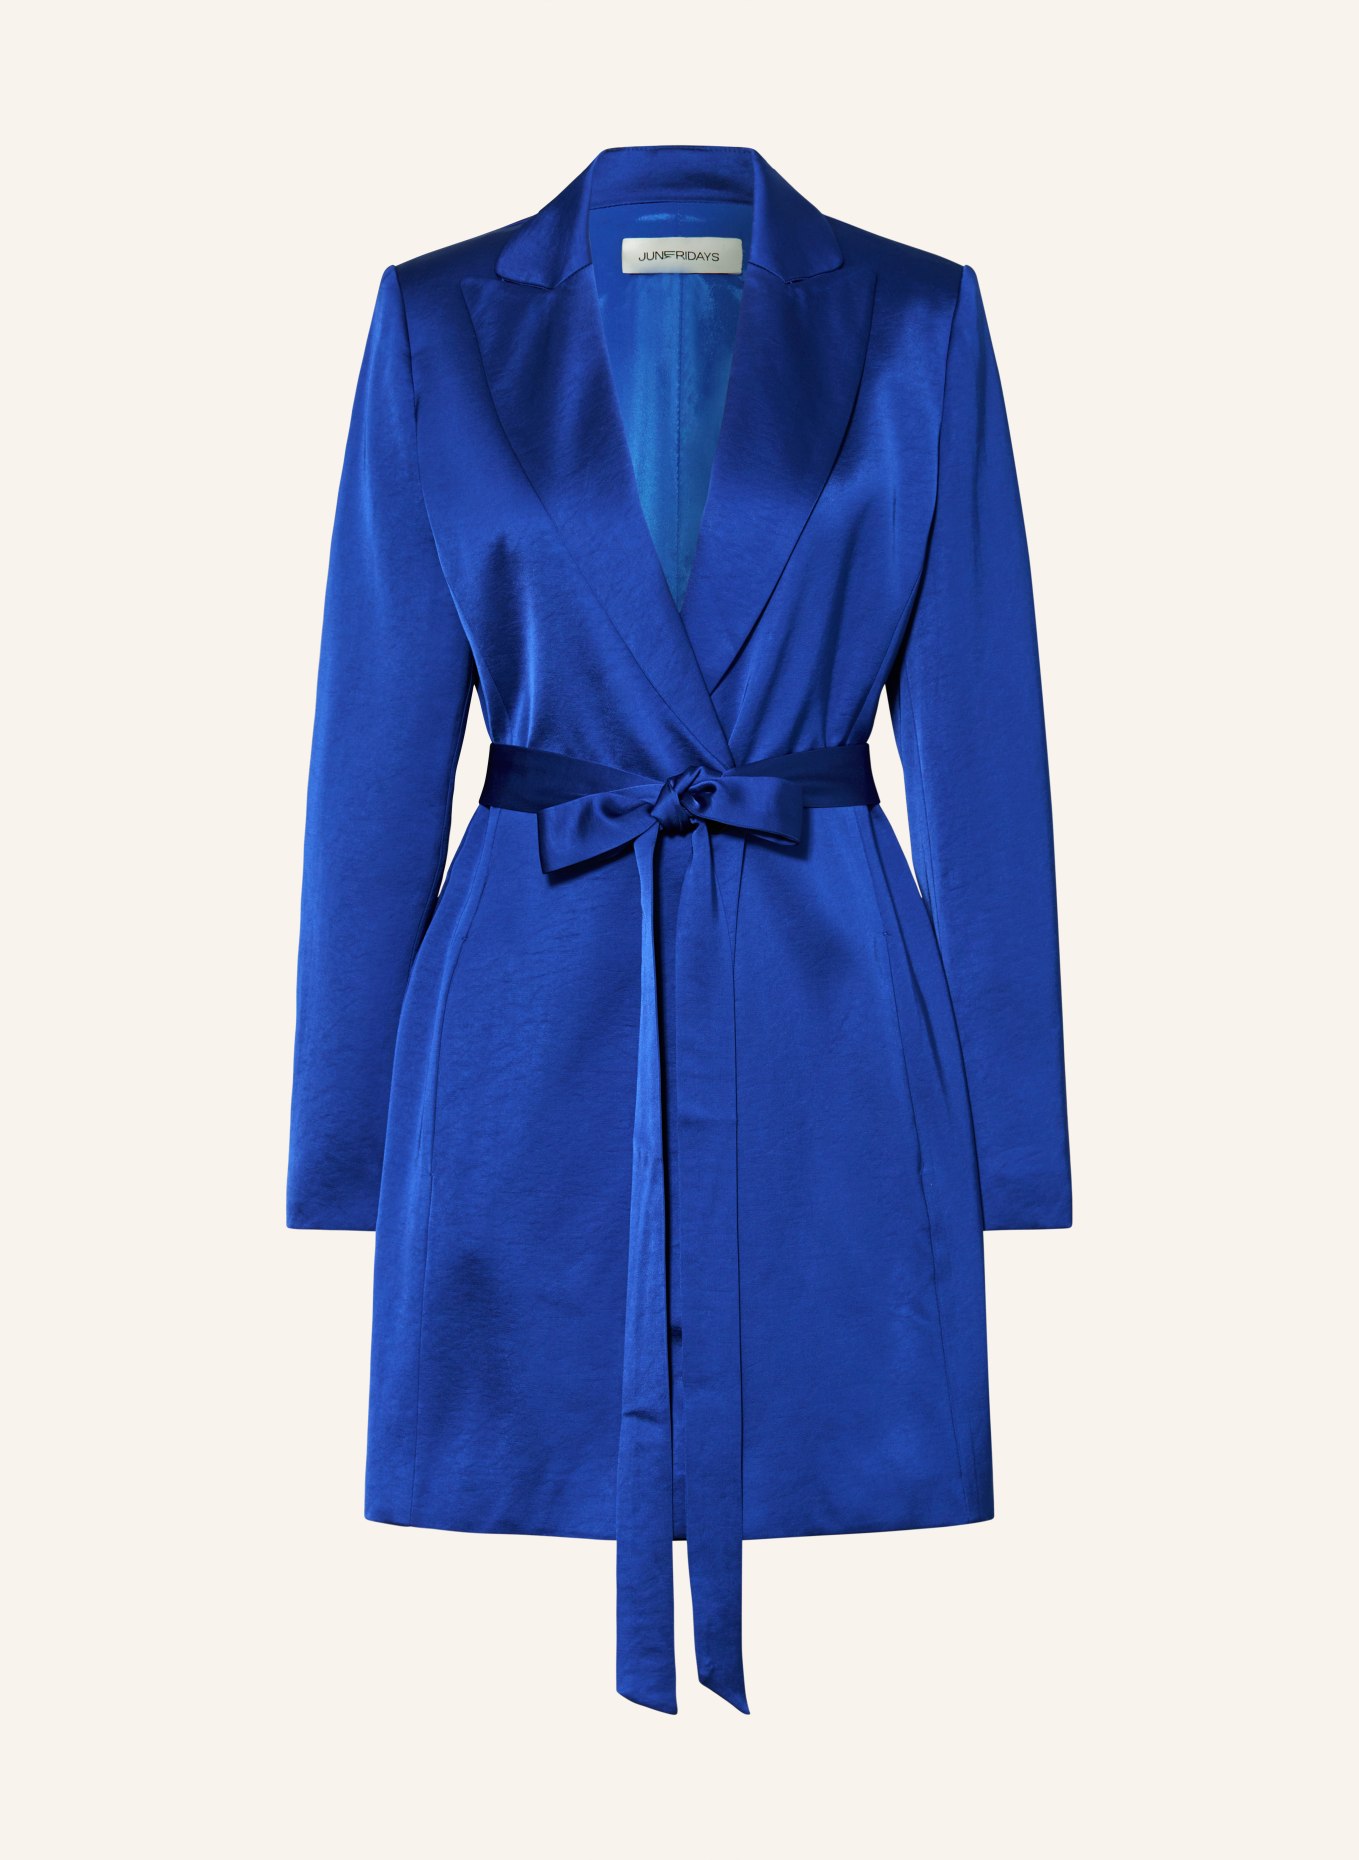 JUNE FRIDAYS Blazer dress, Color: DARK BLUE (Image 1)